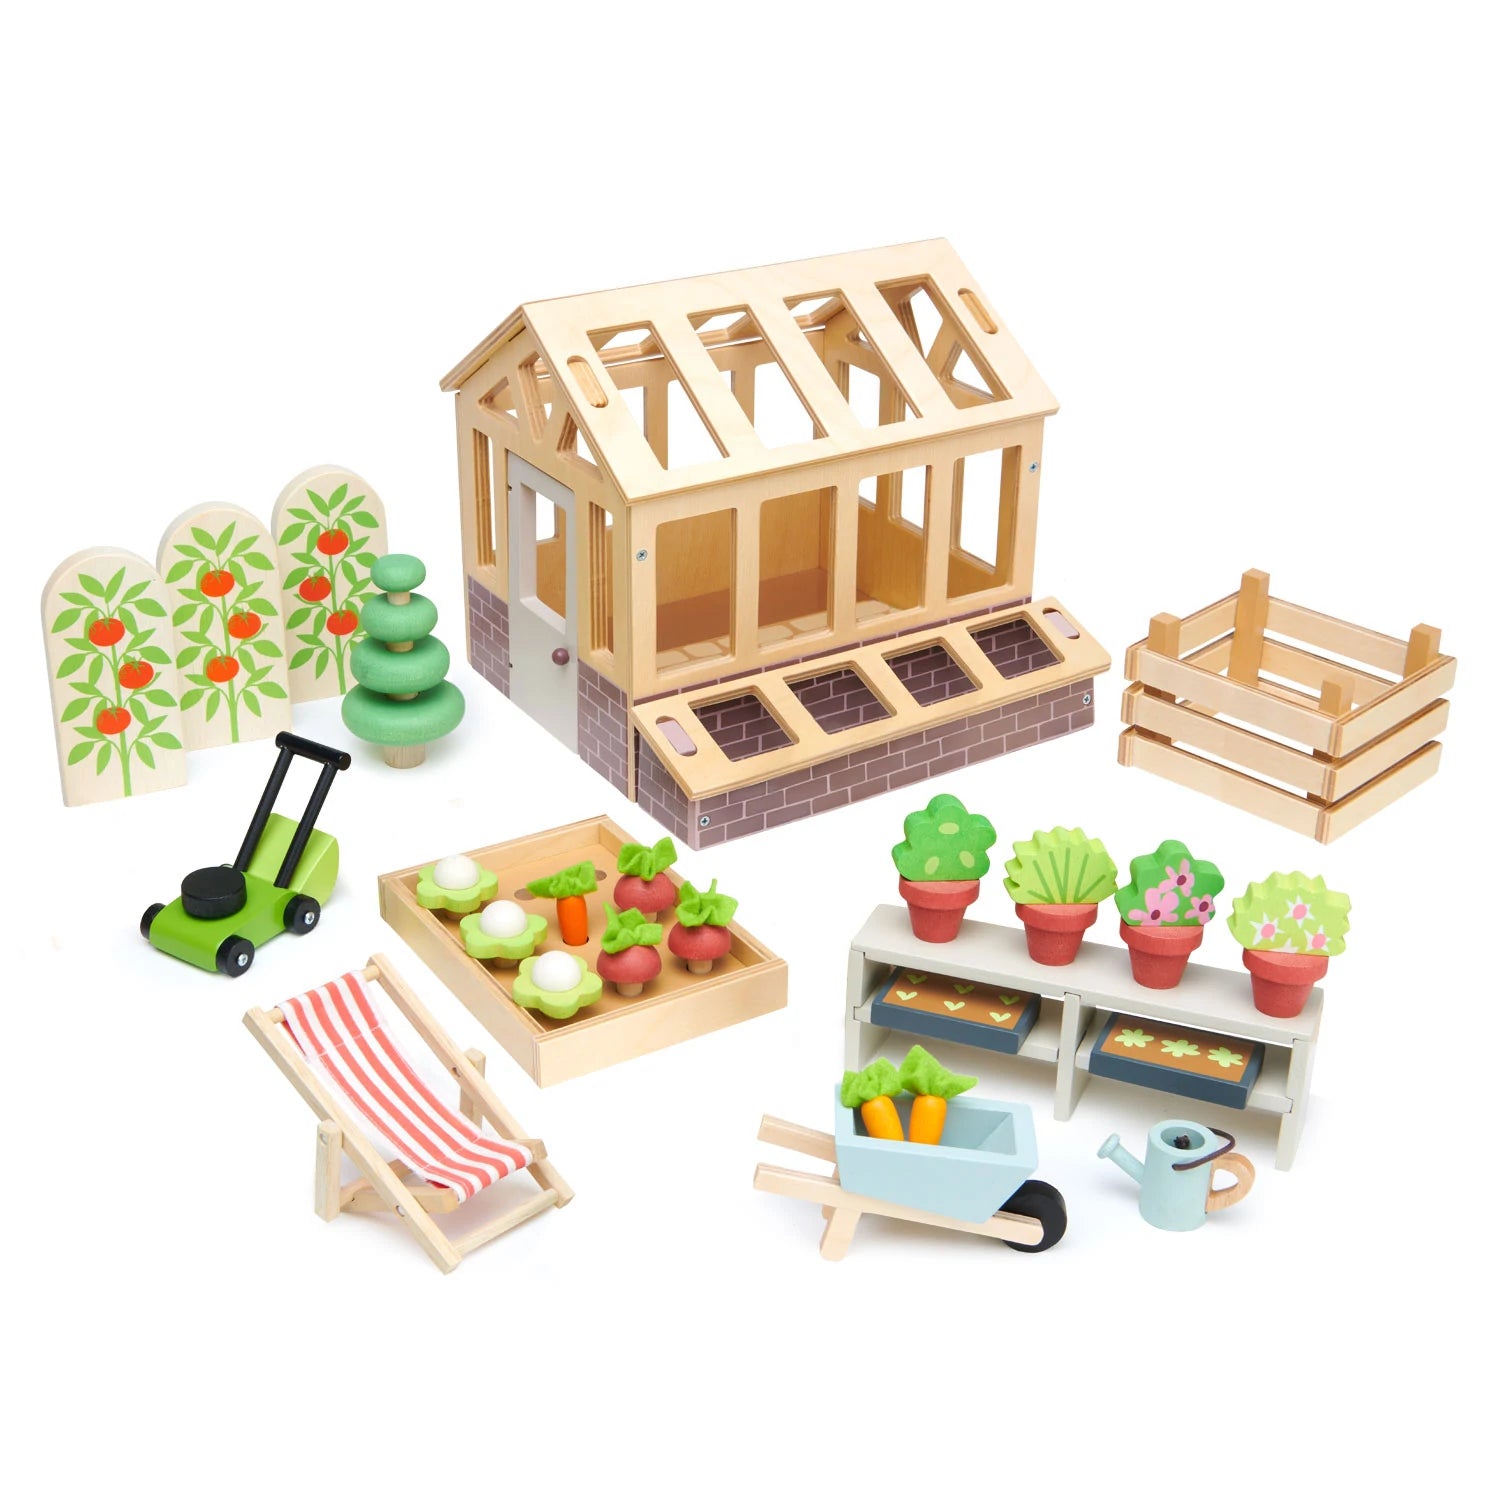 Tender Leaf Toys Wooden Baby Walker and Garden Blocks Set